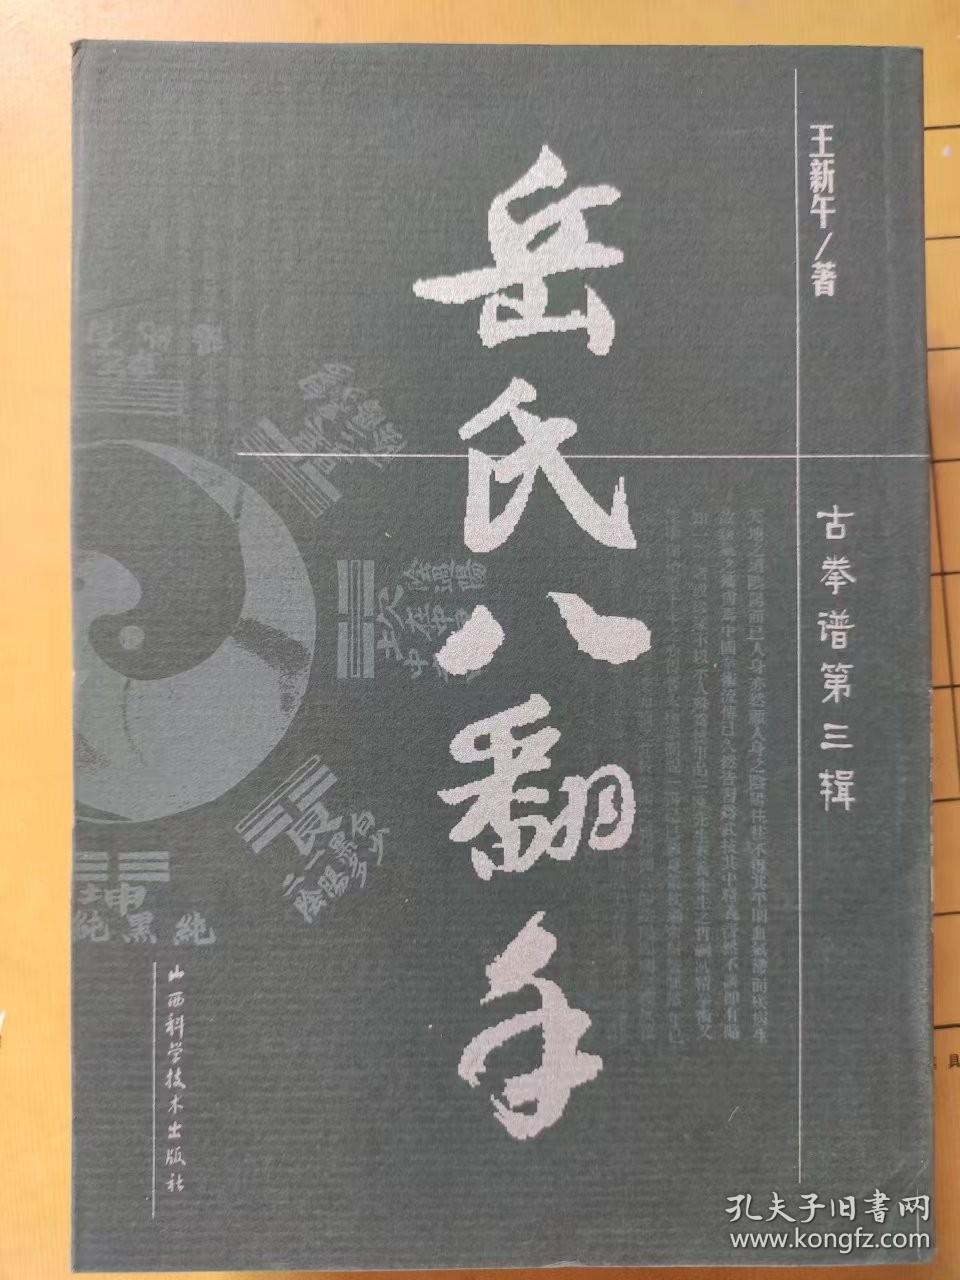 古拳谱第三辑 岳氏八翻手 王新午 著 山西科学技术出版社 2003年